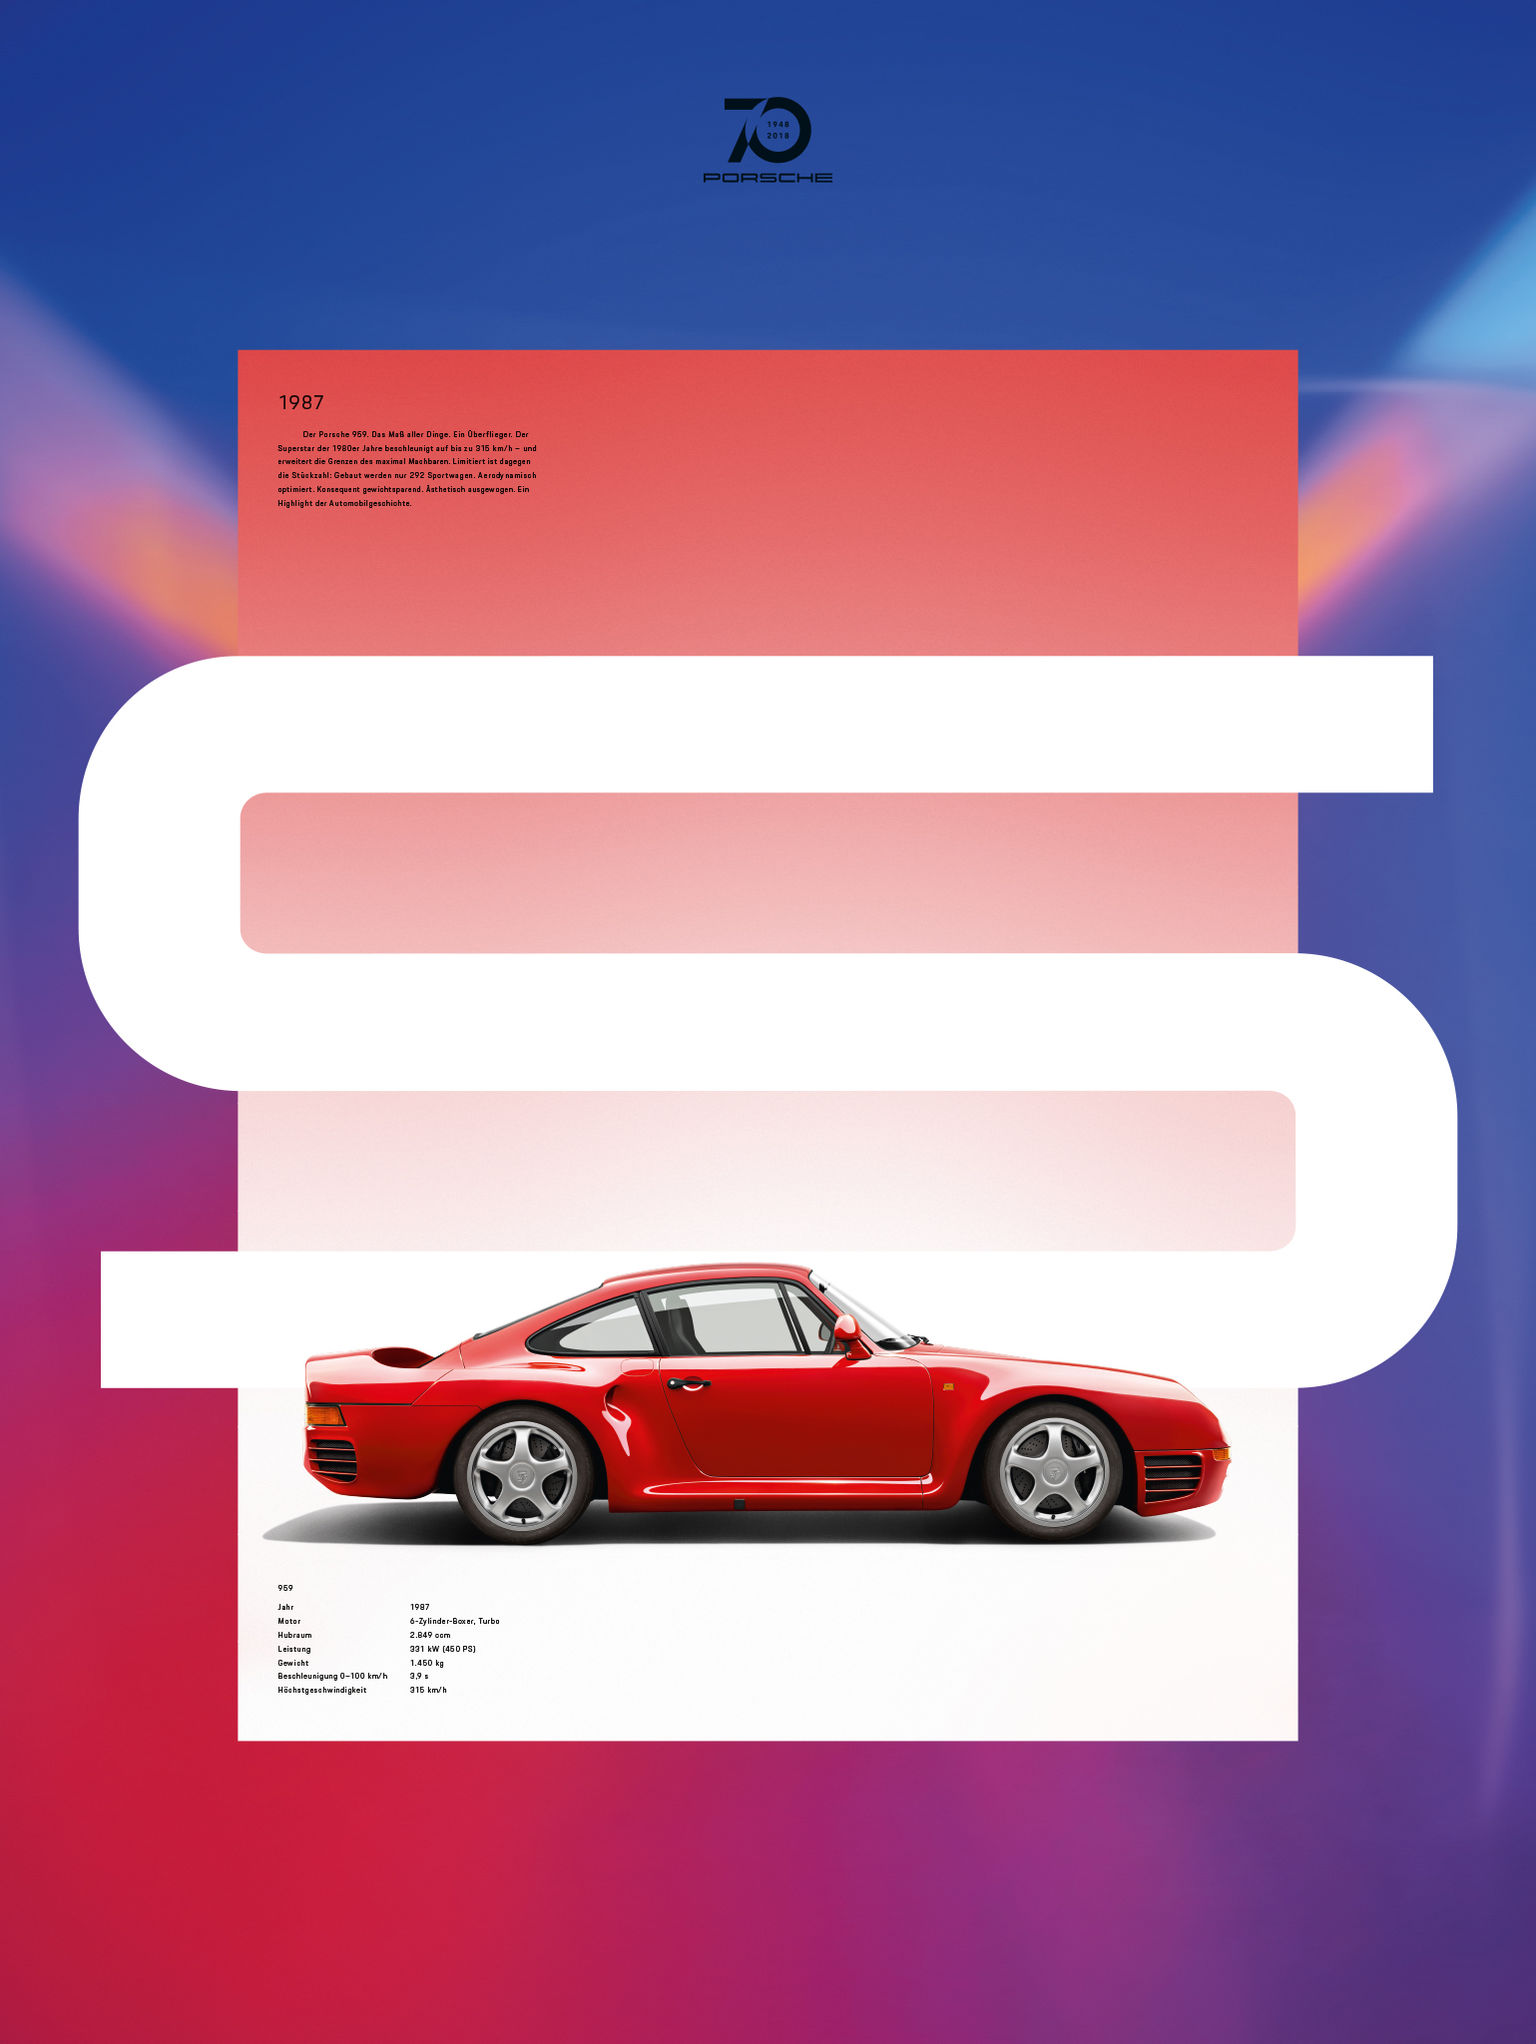 iF Design - Porsche - 70 years Poster Series